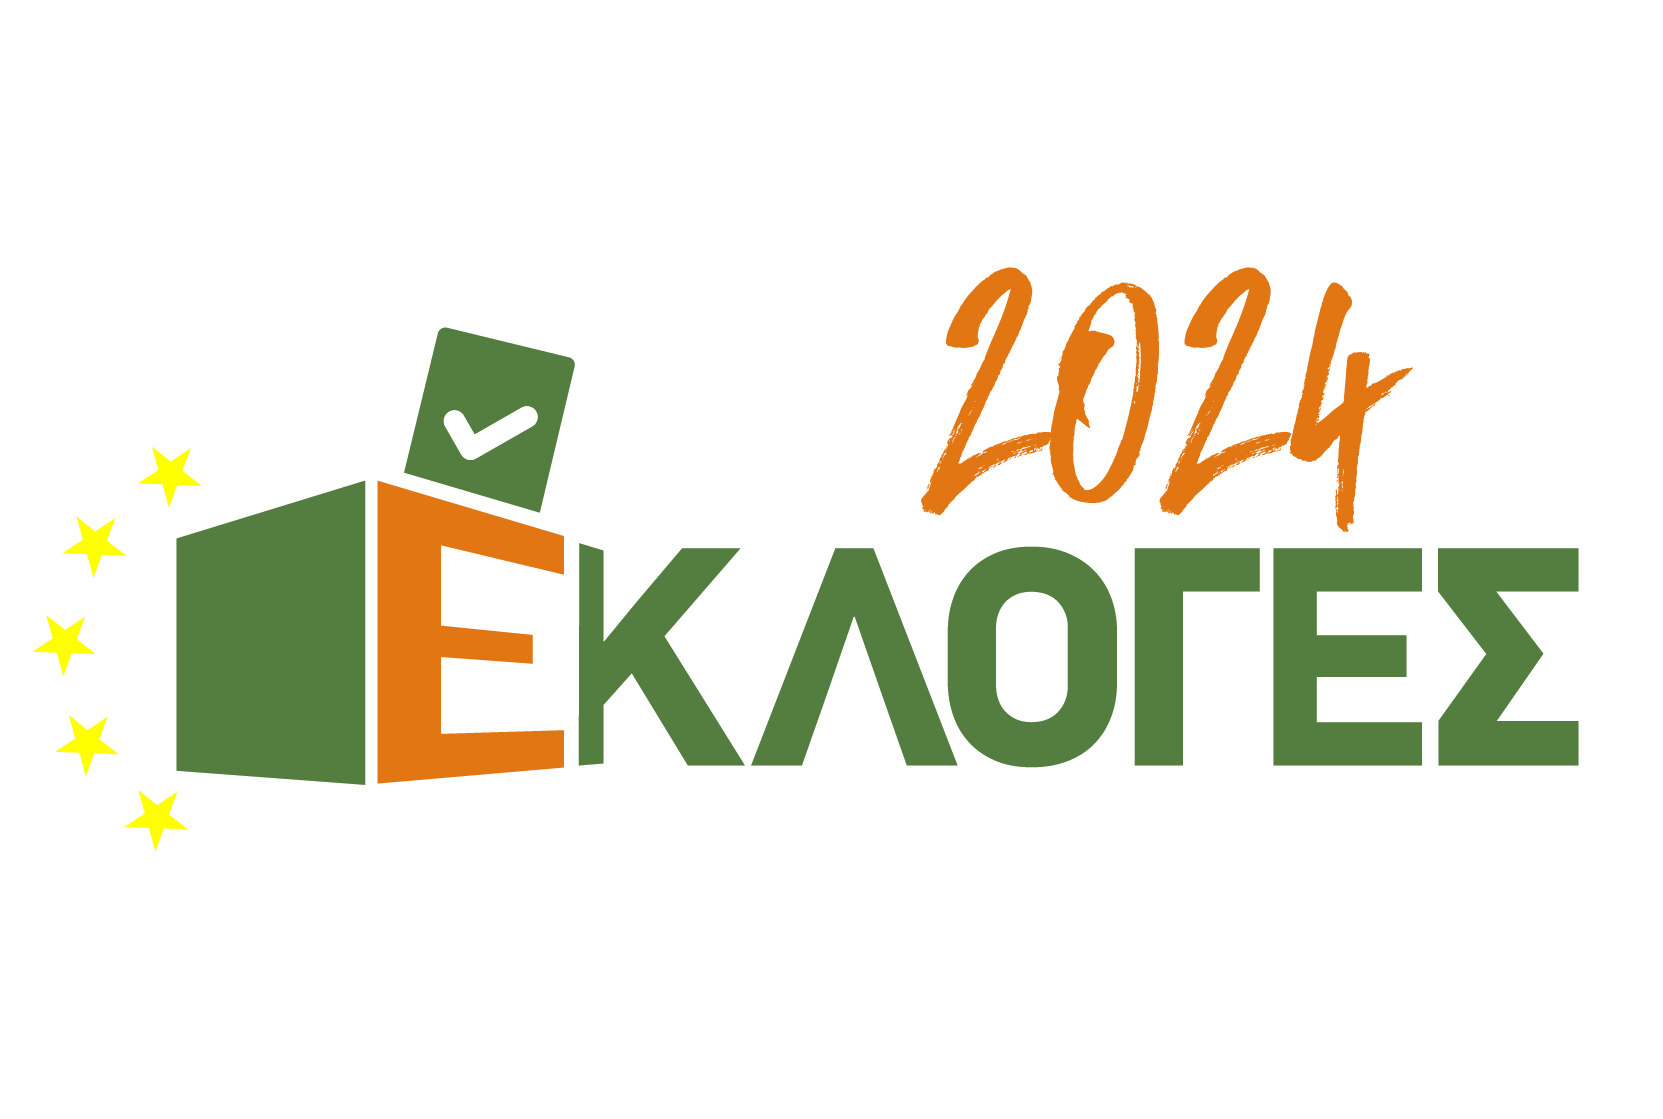 Εκλογές 2024 – Διευκρινίσεις σχετικά με την ανακοίνωση αποτελεσμάτων δημοσκοπήσεων εξόδου (EXIT POLLS), μετά τη λήξη της ψηφοφορίας